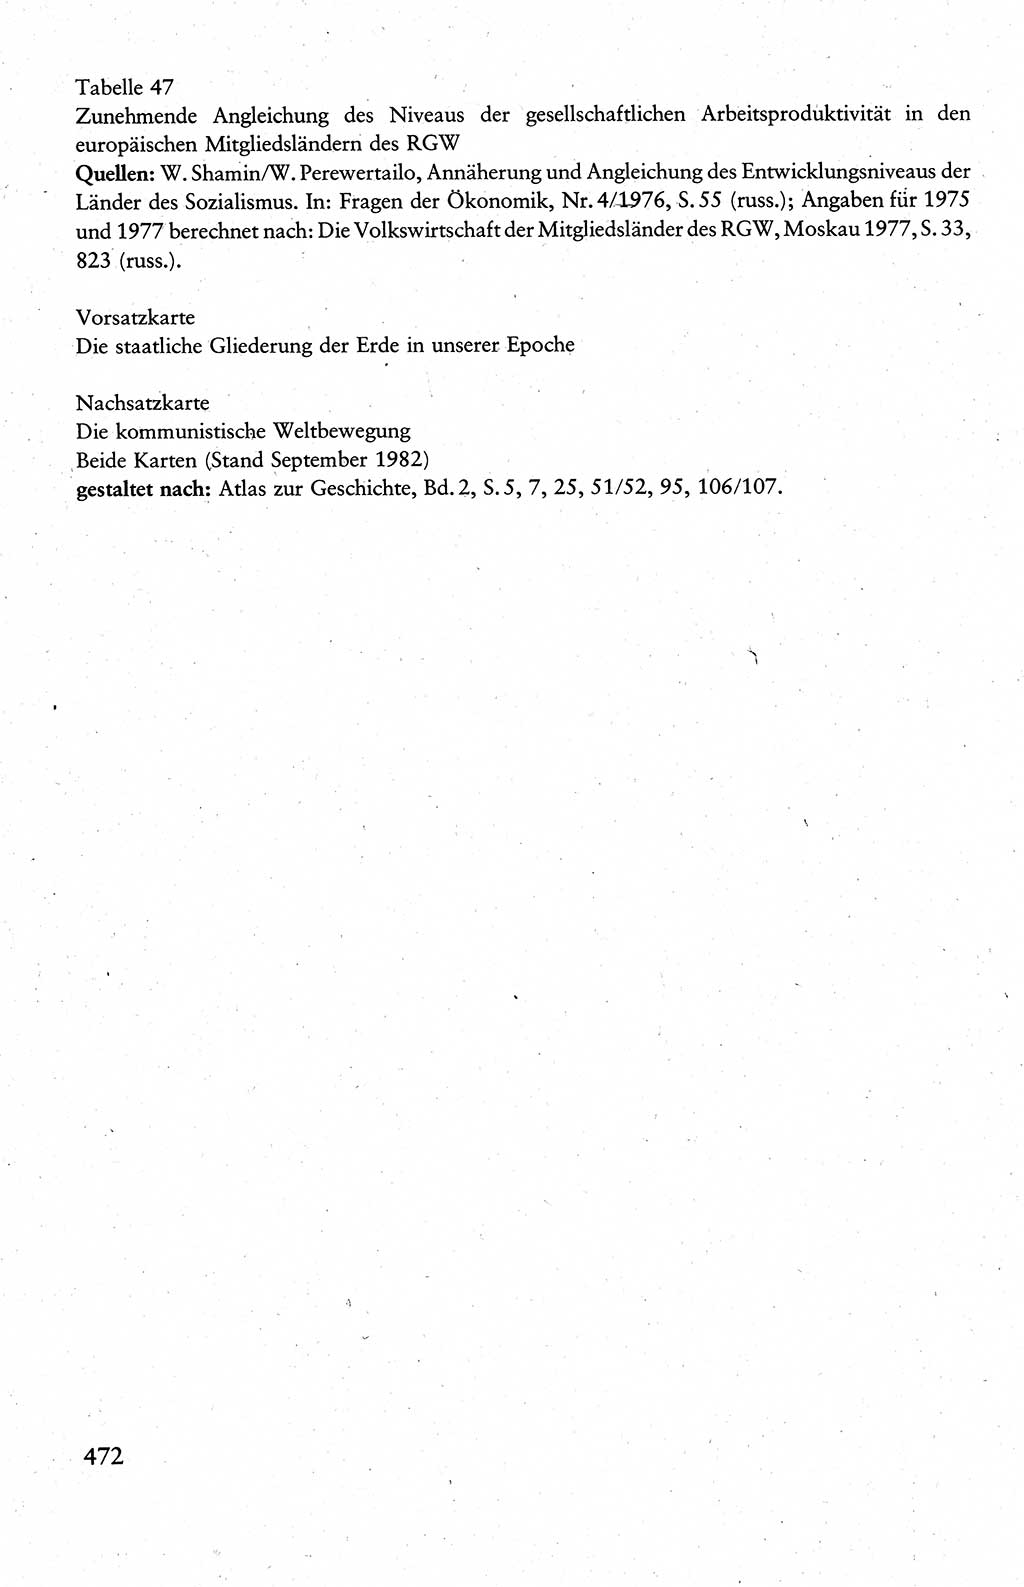 Wissenschaftlicher Kommunismus [Deutsche Demokratische Republik (DDR)], Lehrbuch für das marxistisch-leninistische Grundlagenstudium 1983, Seite 472 (Wiss. Komm. DDR Lb. 1983, S. 472)